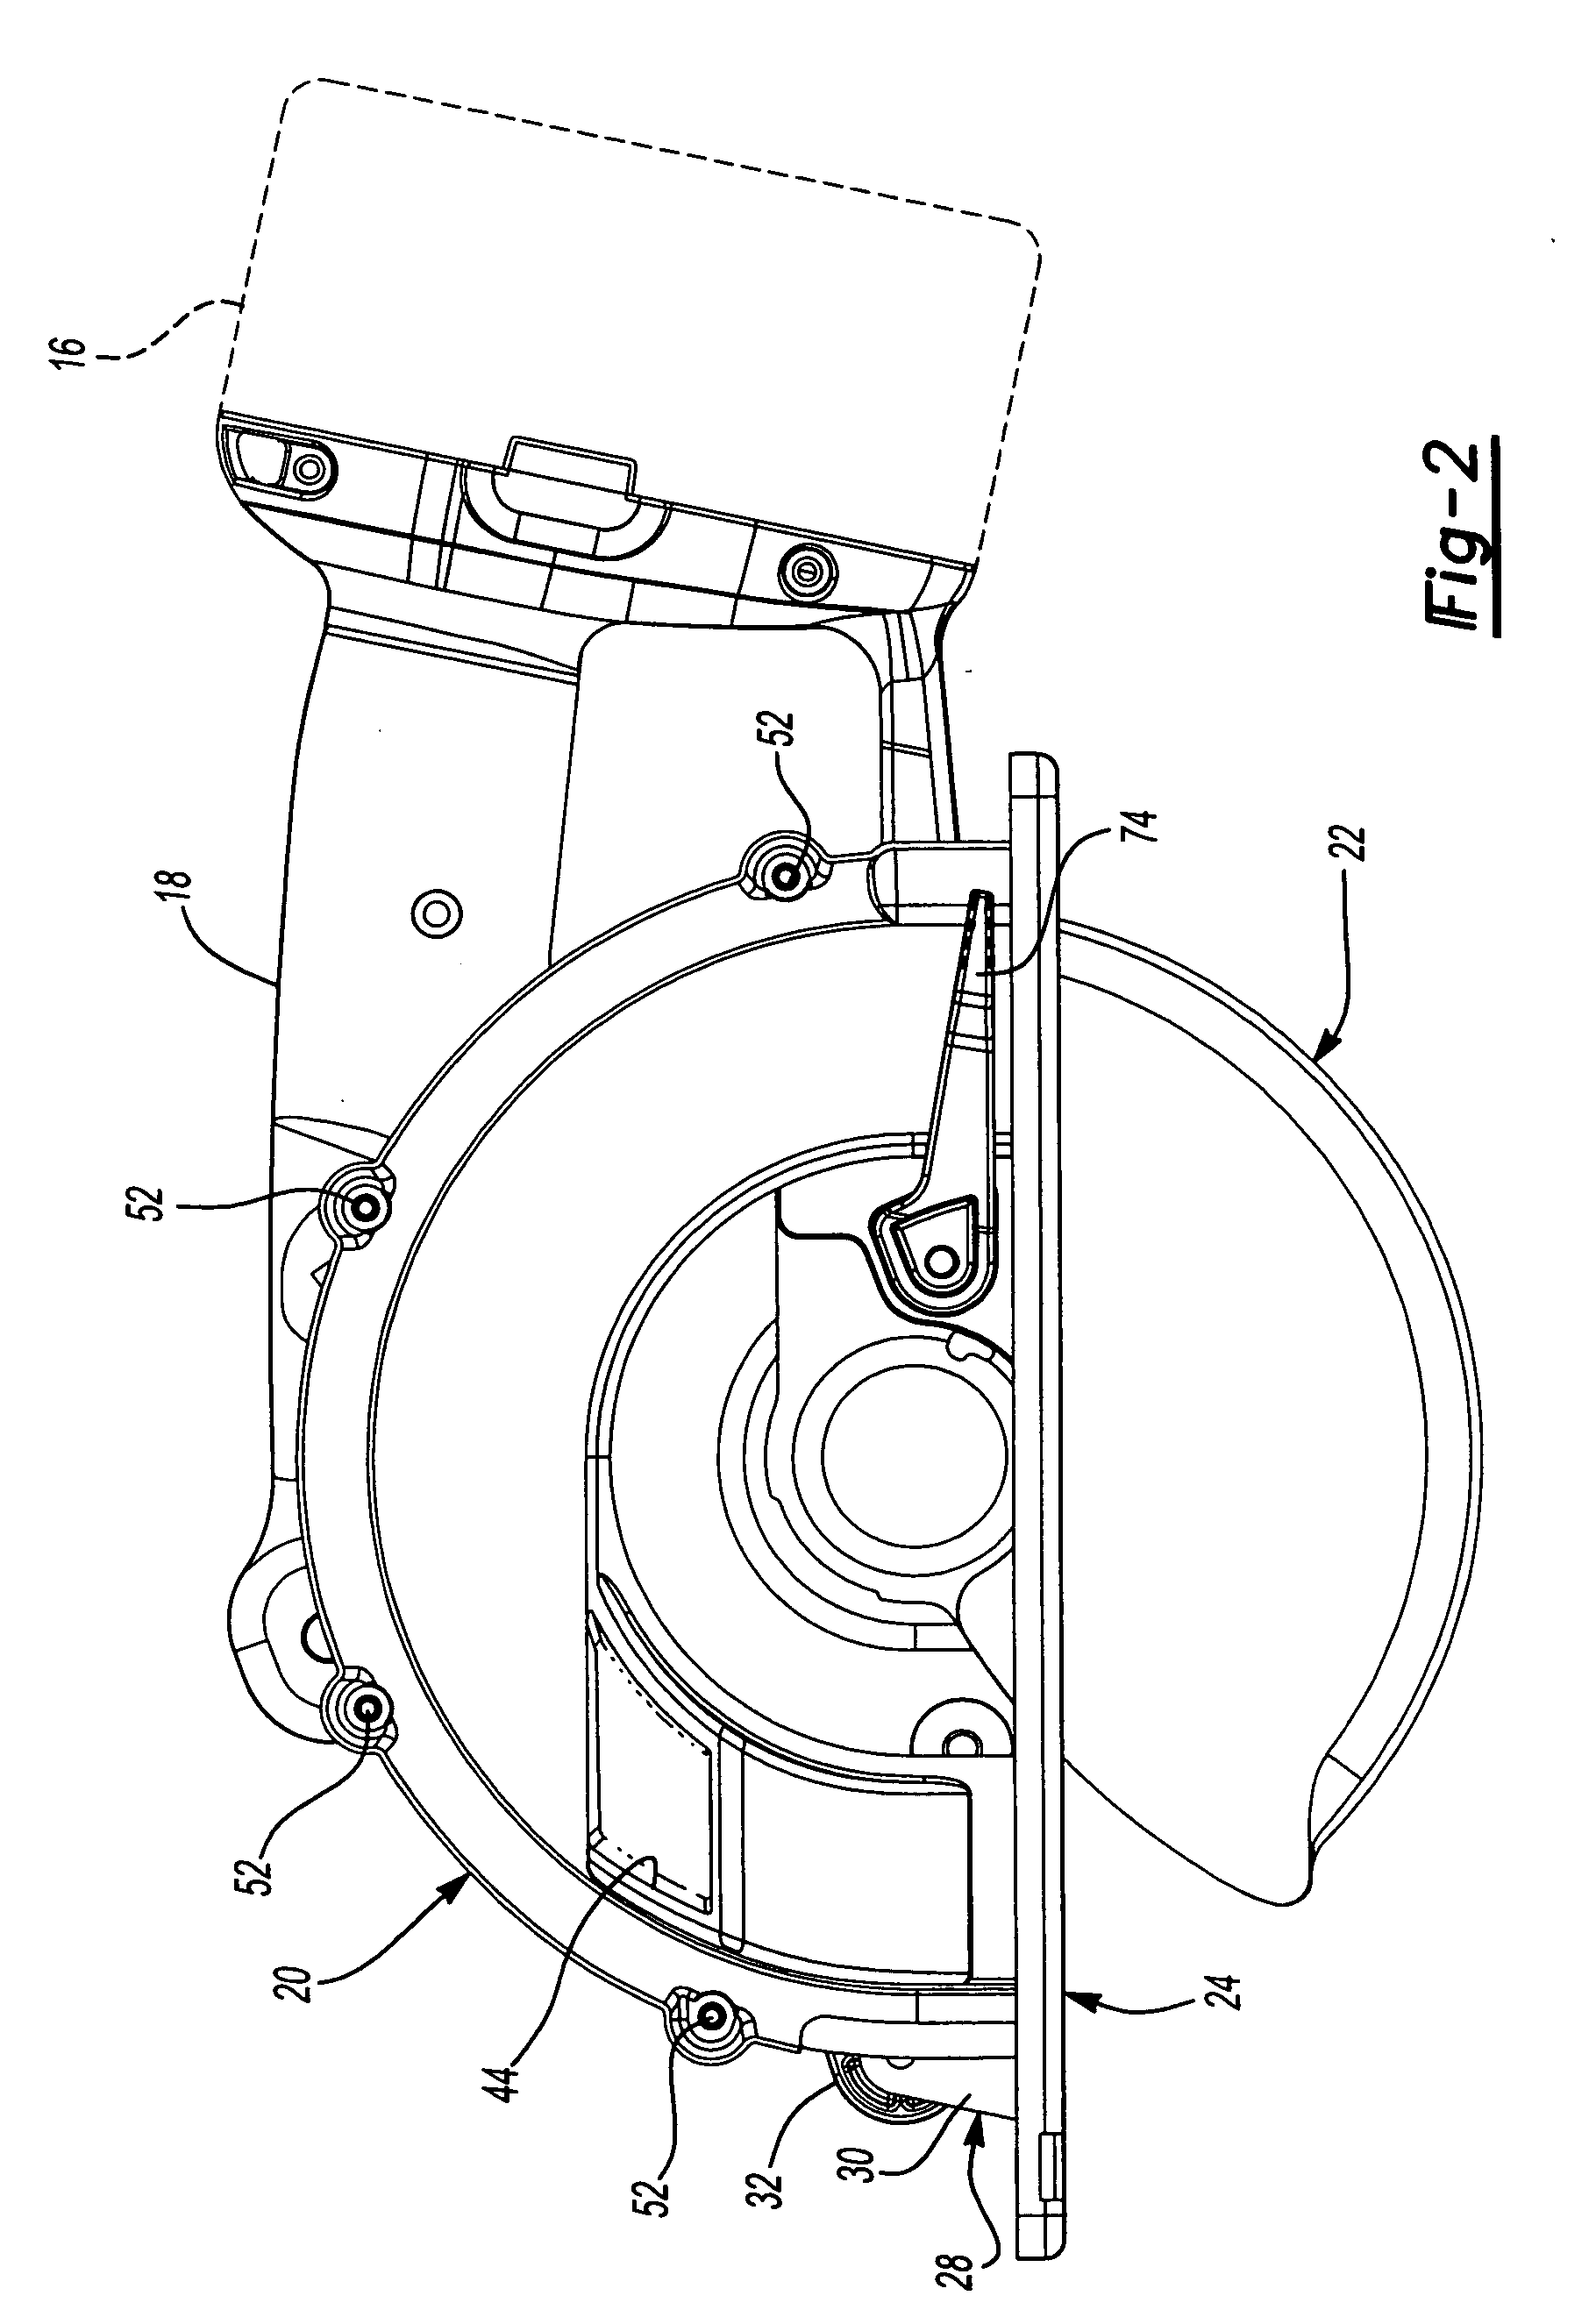 Metal cutting circular saw with integral sight window